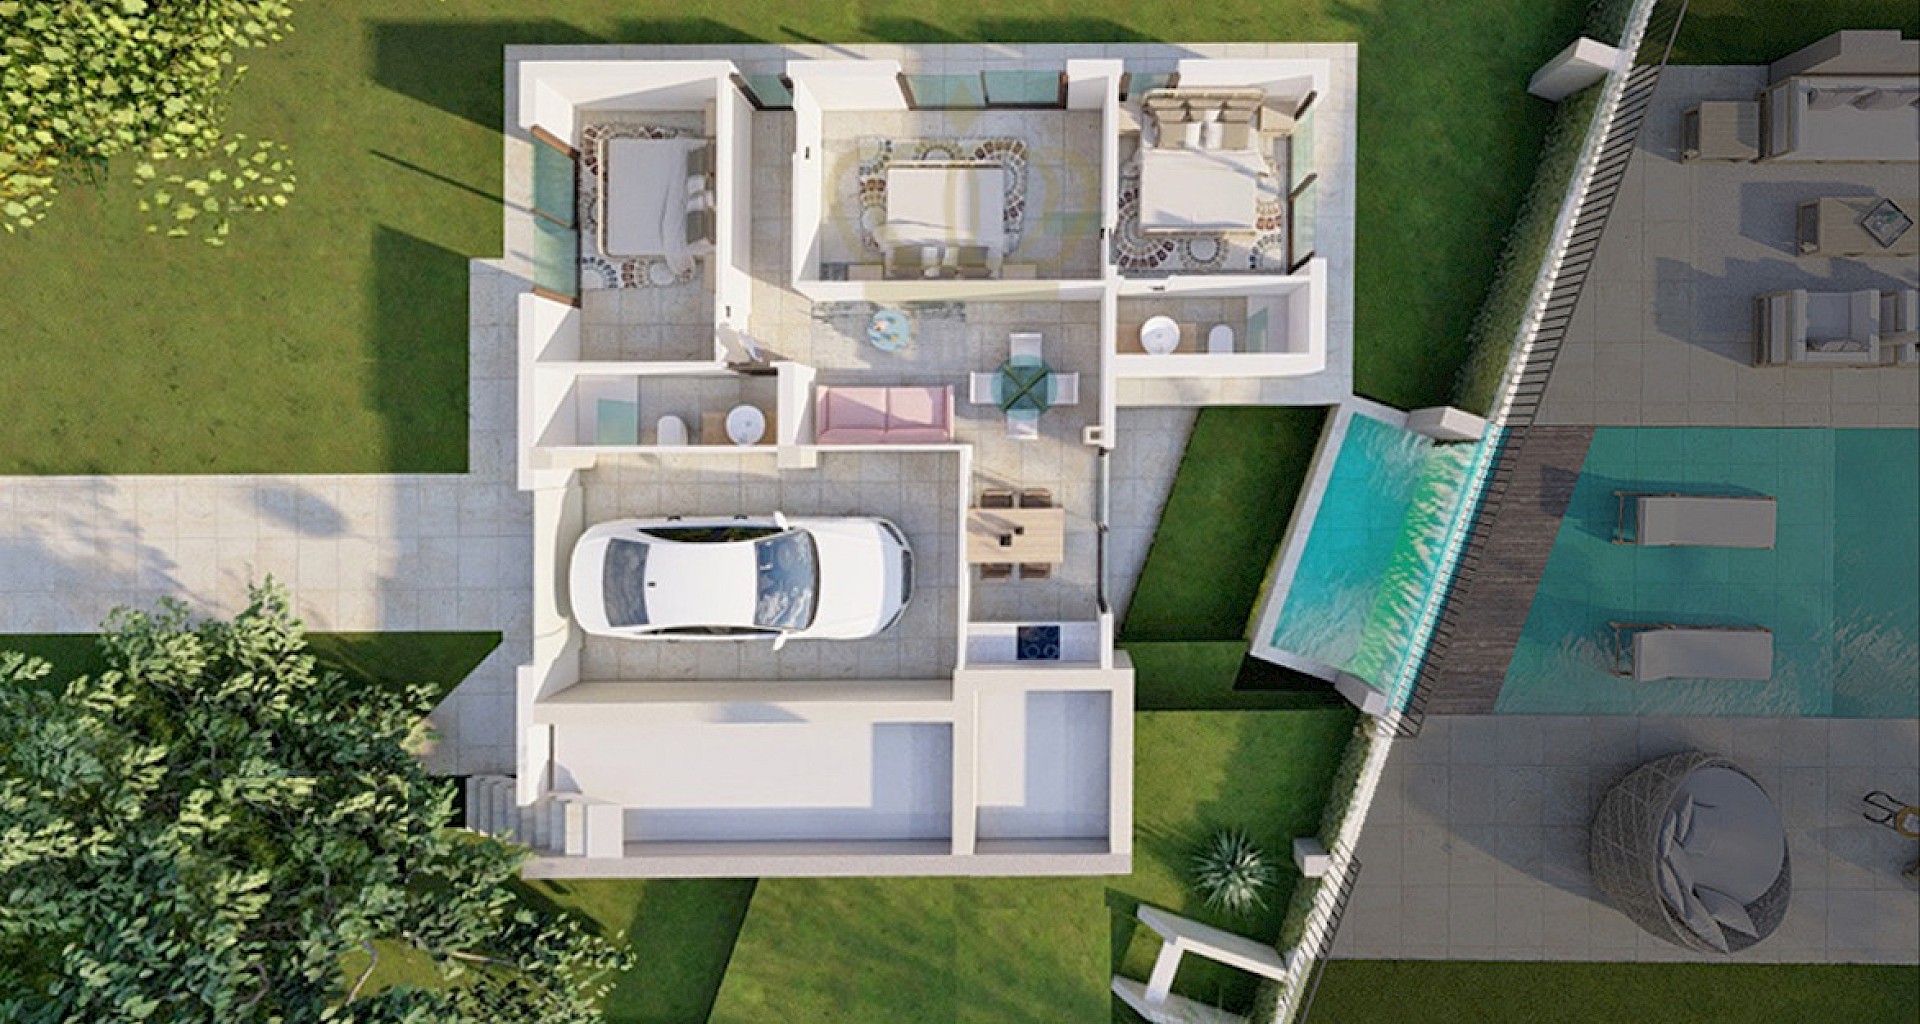 KROHN & LUEDEMANN Top projet de villas à Majorque Paguera avec permis de construire 